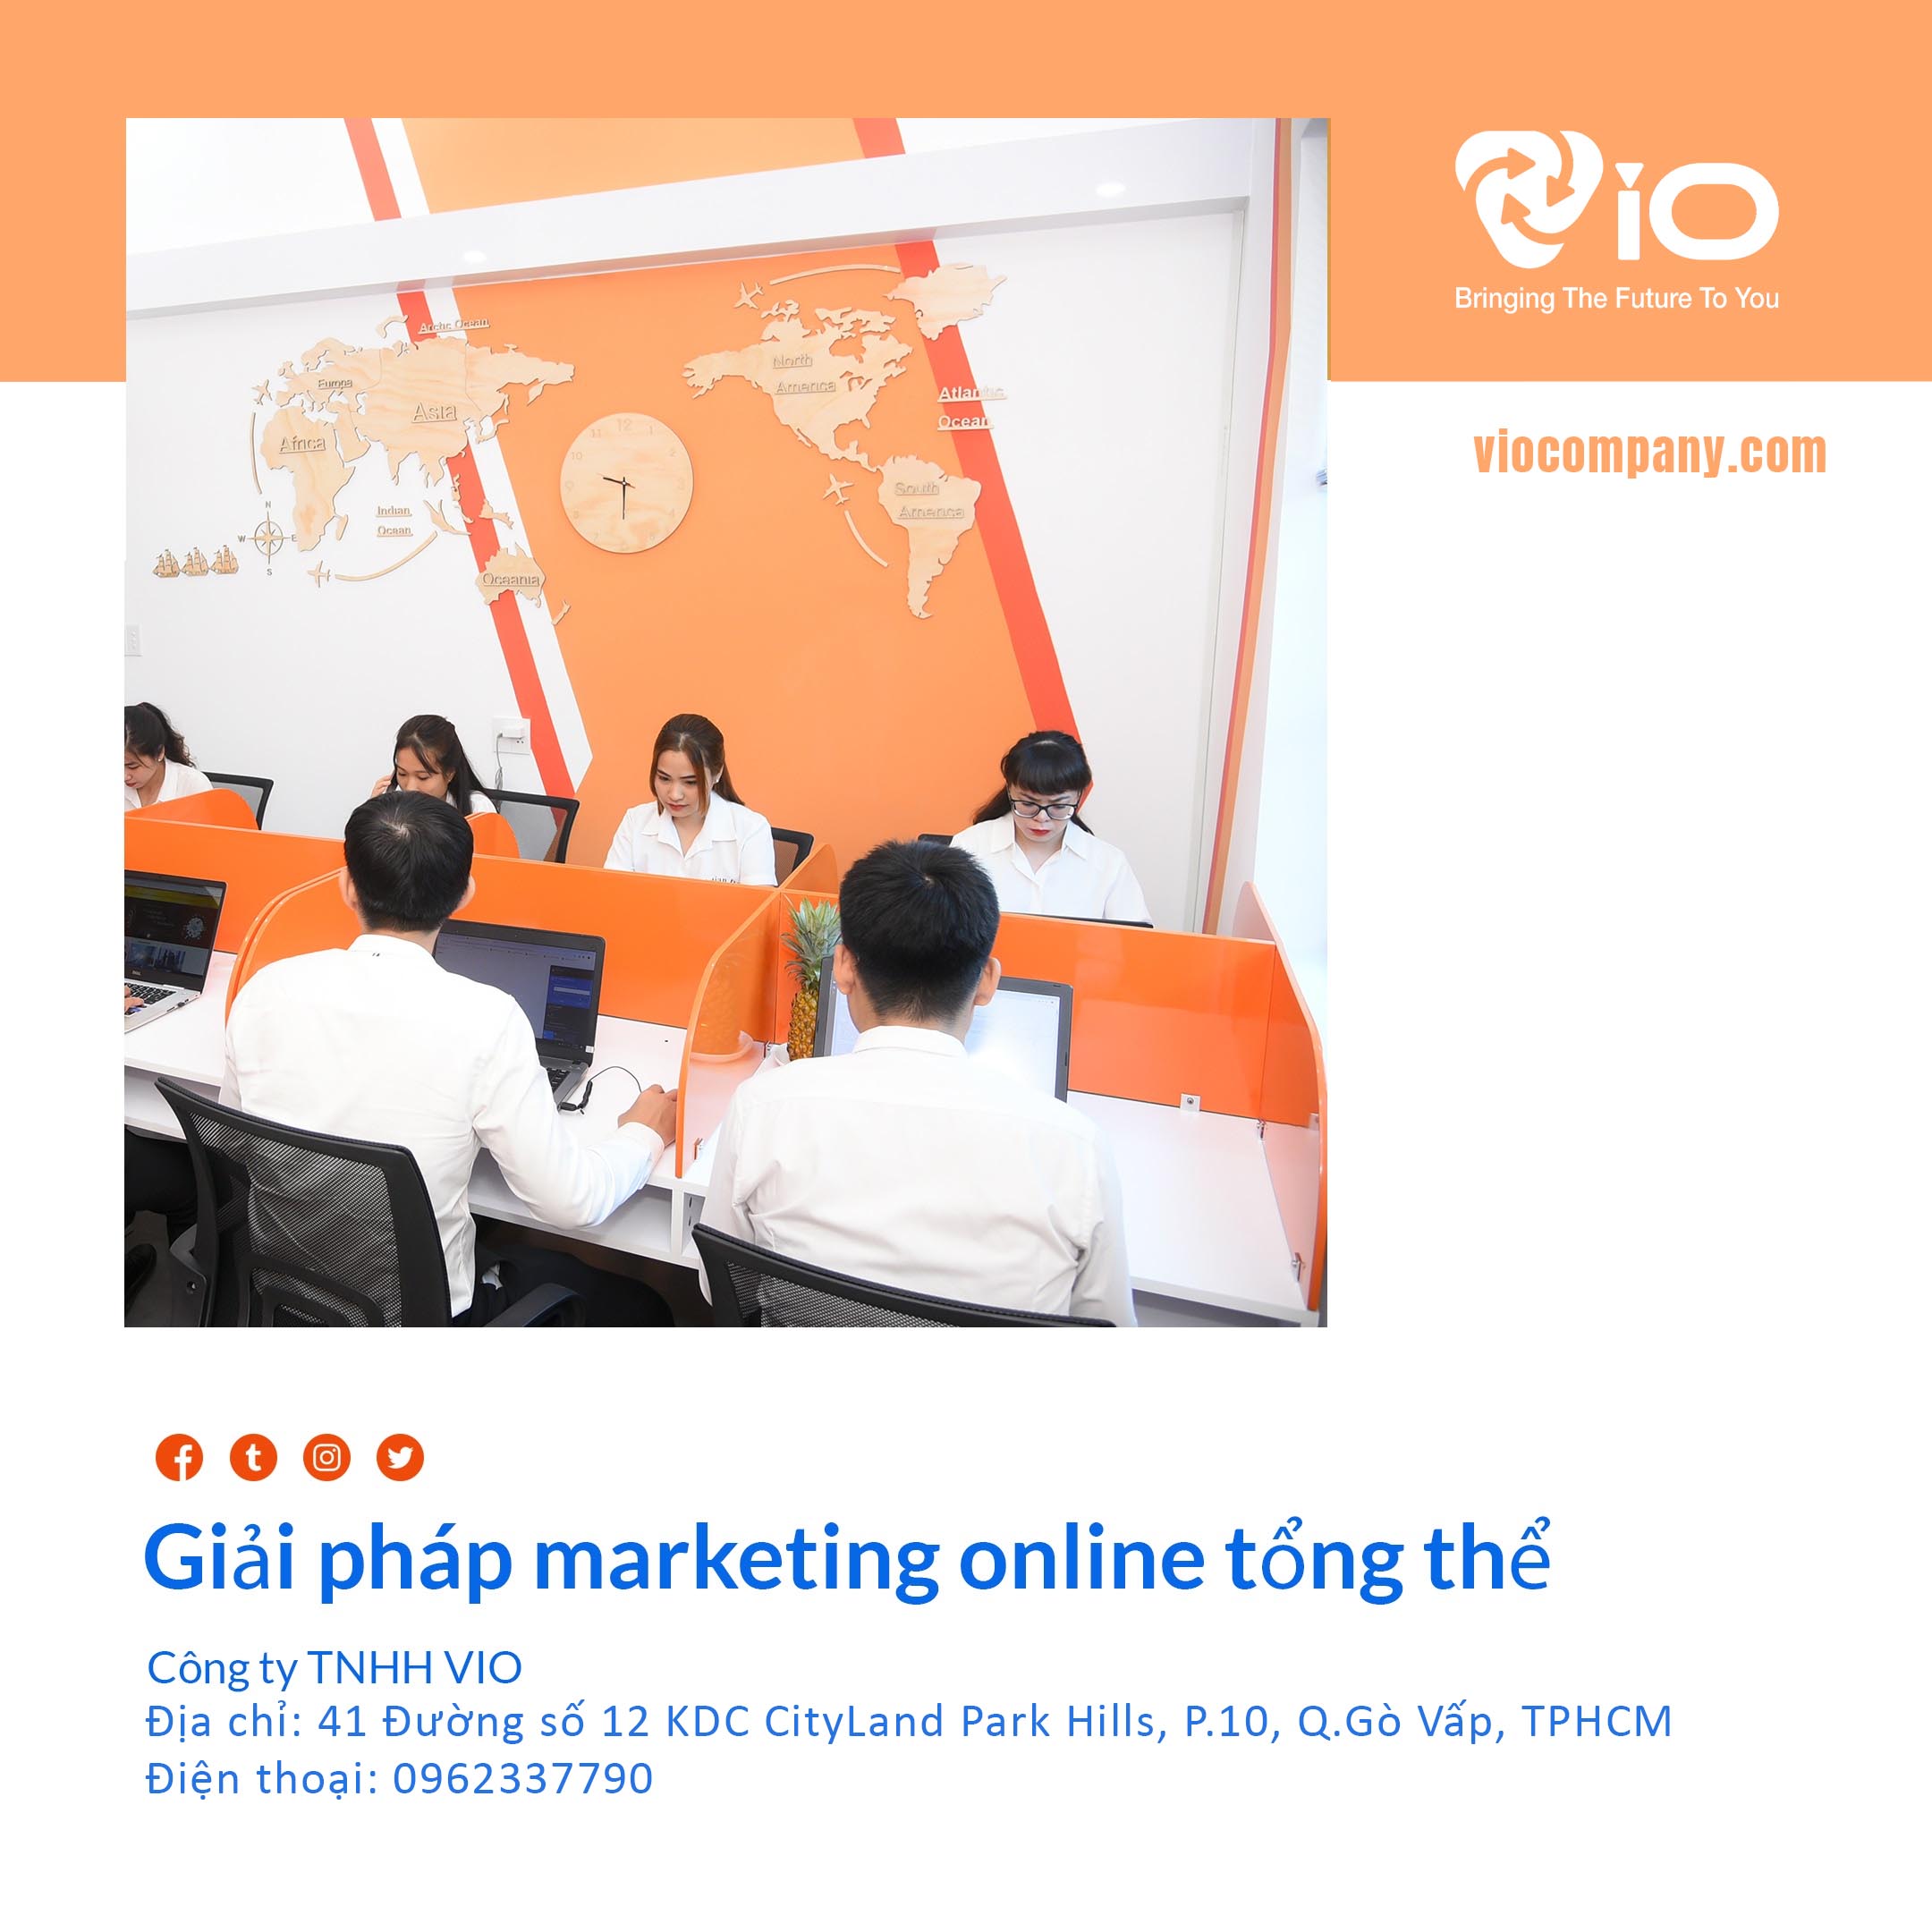 Vì sao nên chọn VIO Agency cho chiến dịch marketing online?